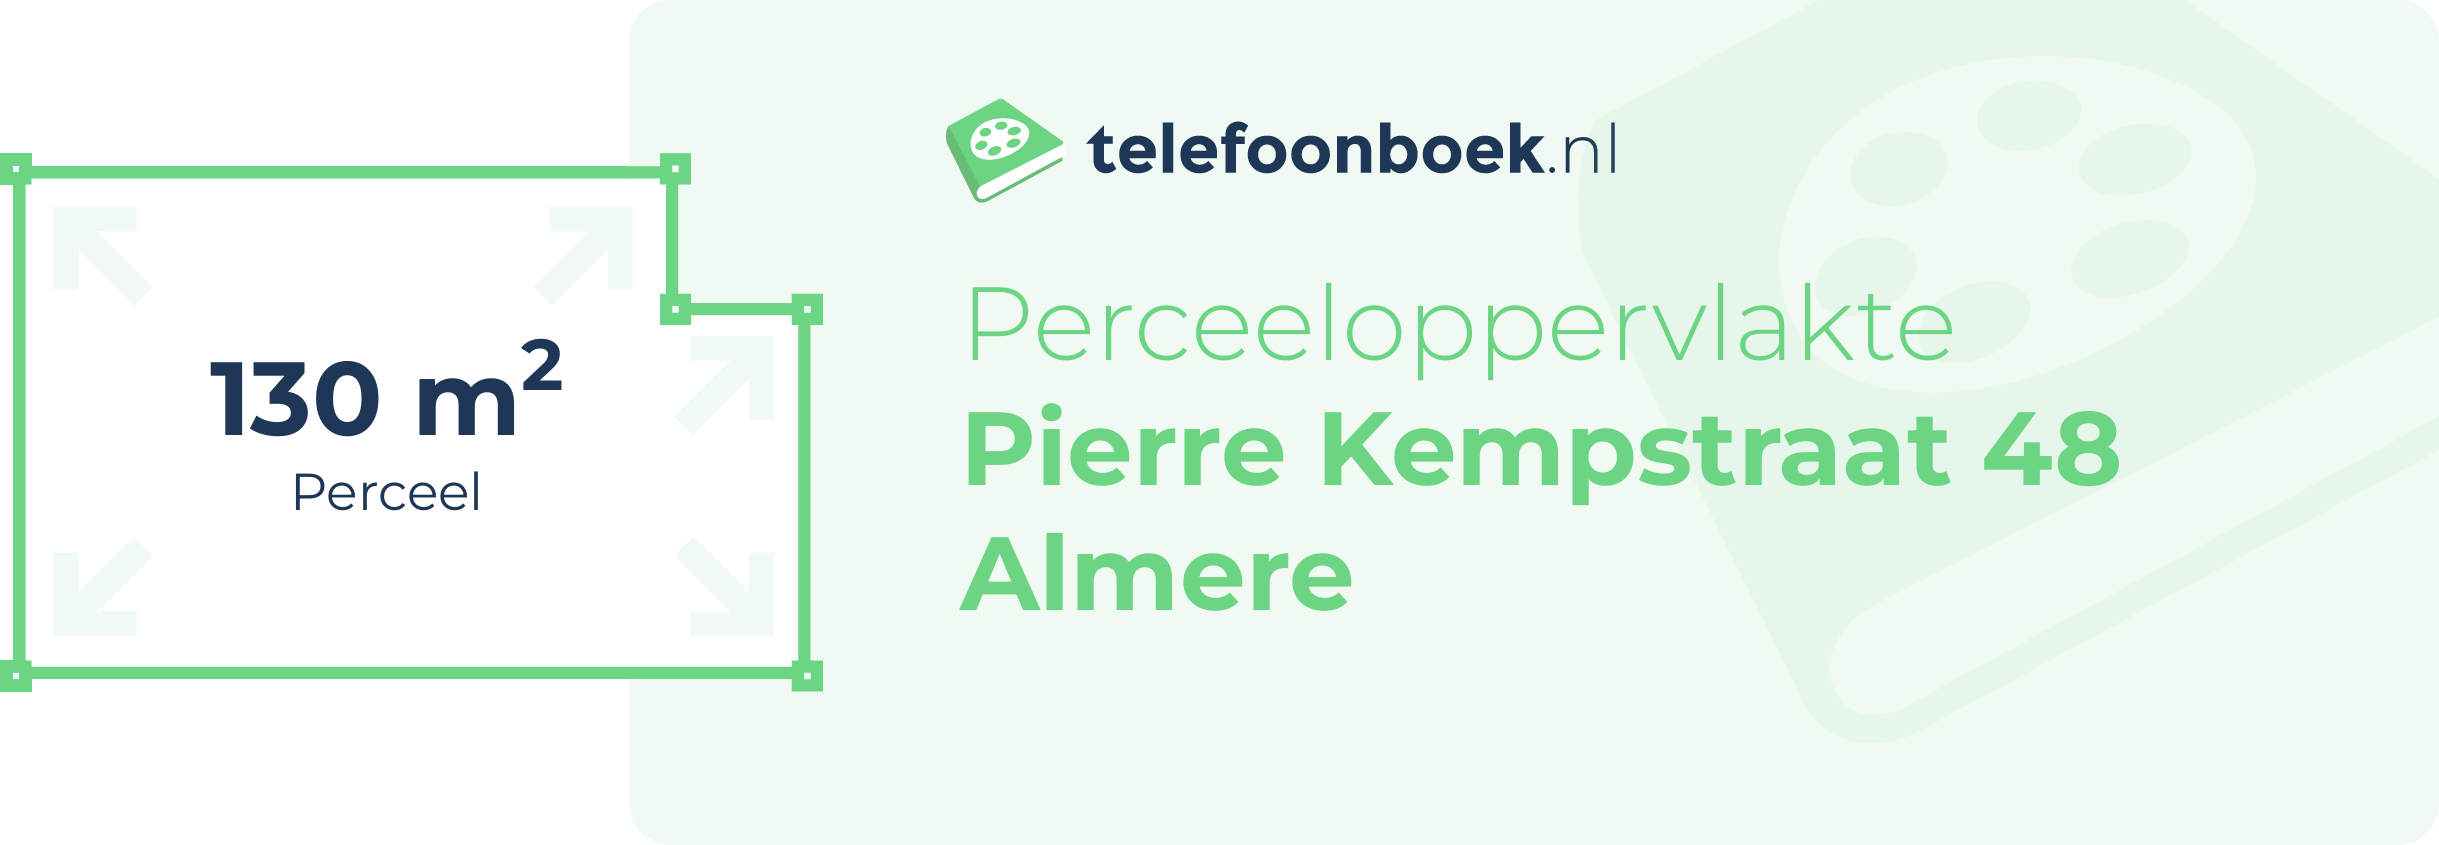 Perceeloppervlakte Pierre Kempstraat 48 Almere